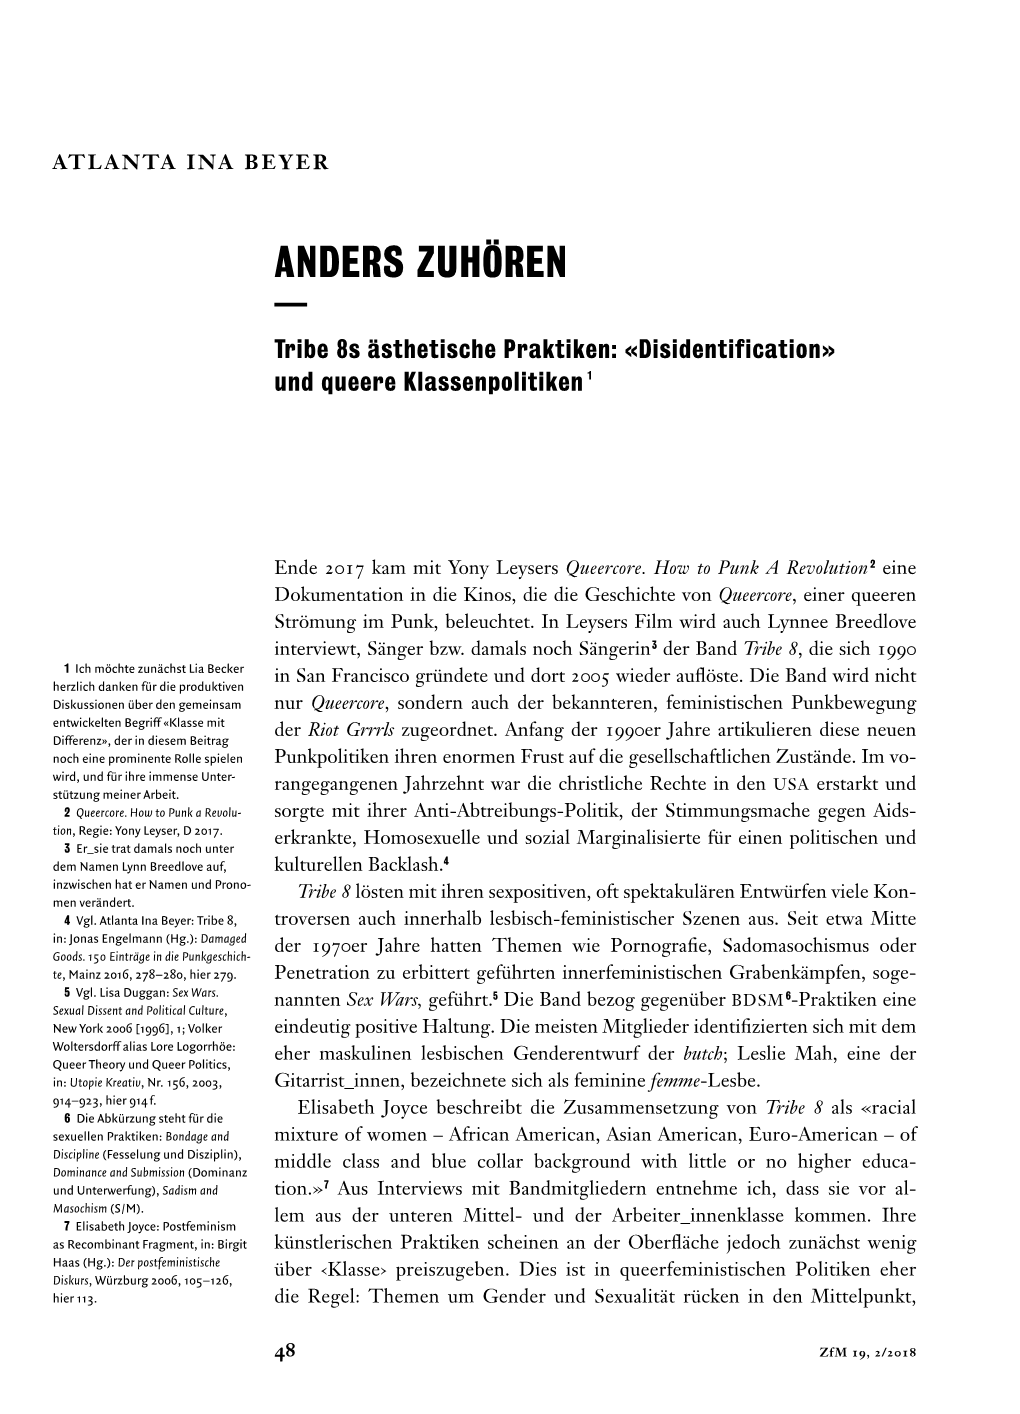 ANDERS ZUHÖREN — Tribe 8S Ästhetische Praktiken: «Disidentification» Und Queere Klassenpolitiken 1